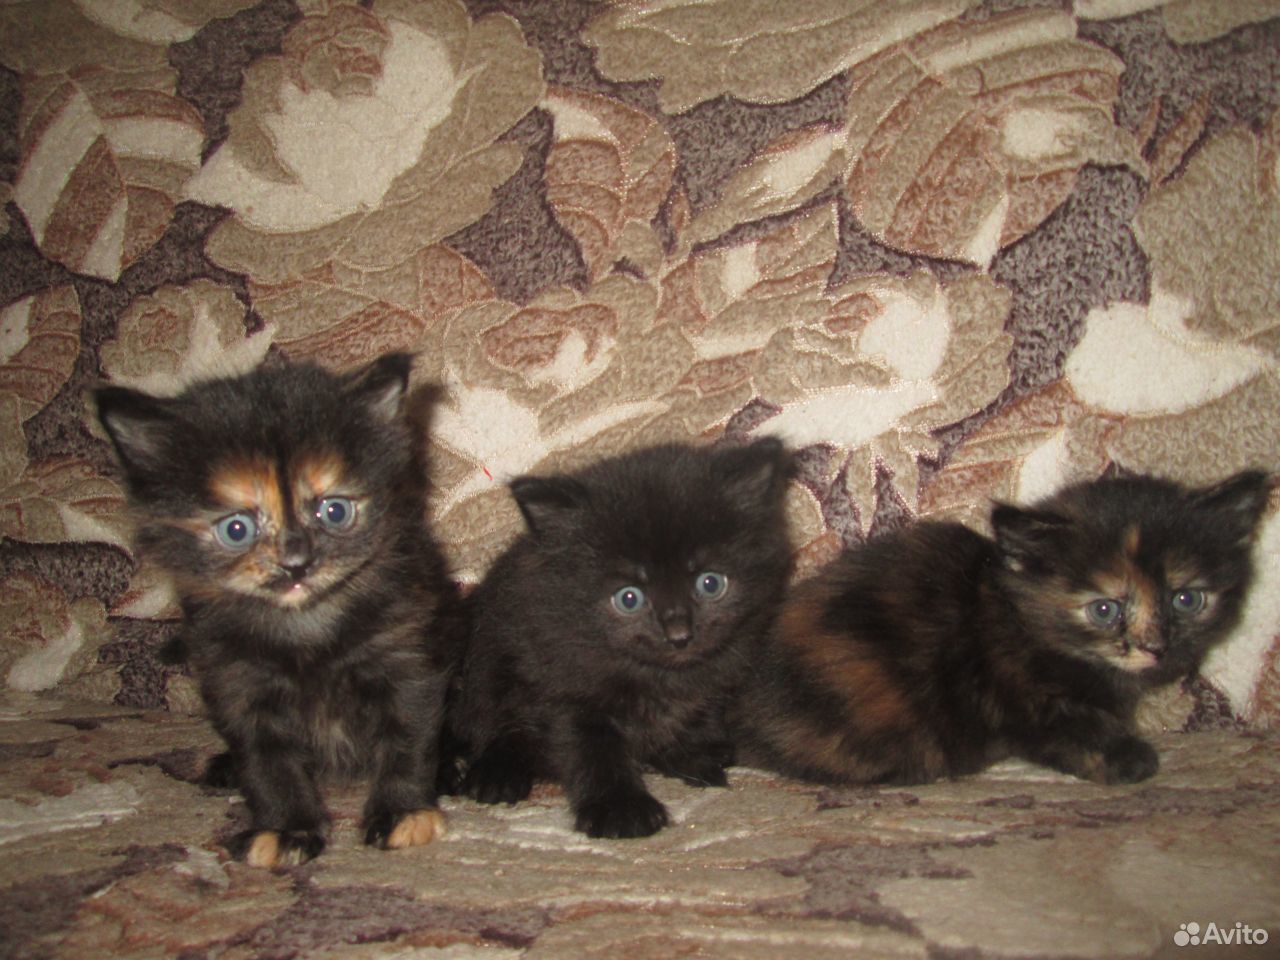 У черной кошки родился трехцветный котенок. Авито ру Тимашевск фото котят черных трехцветных.